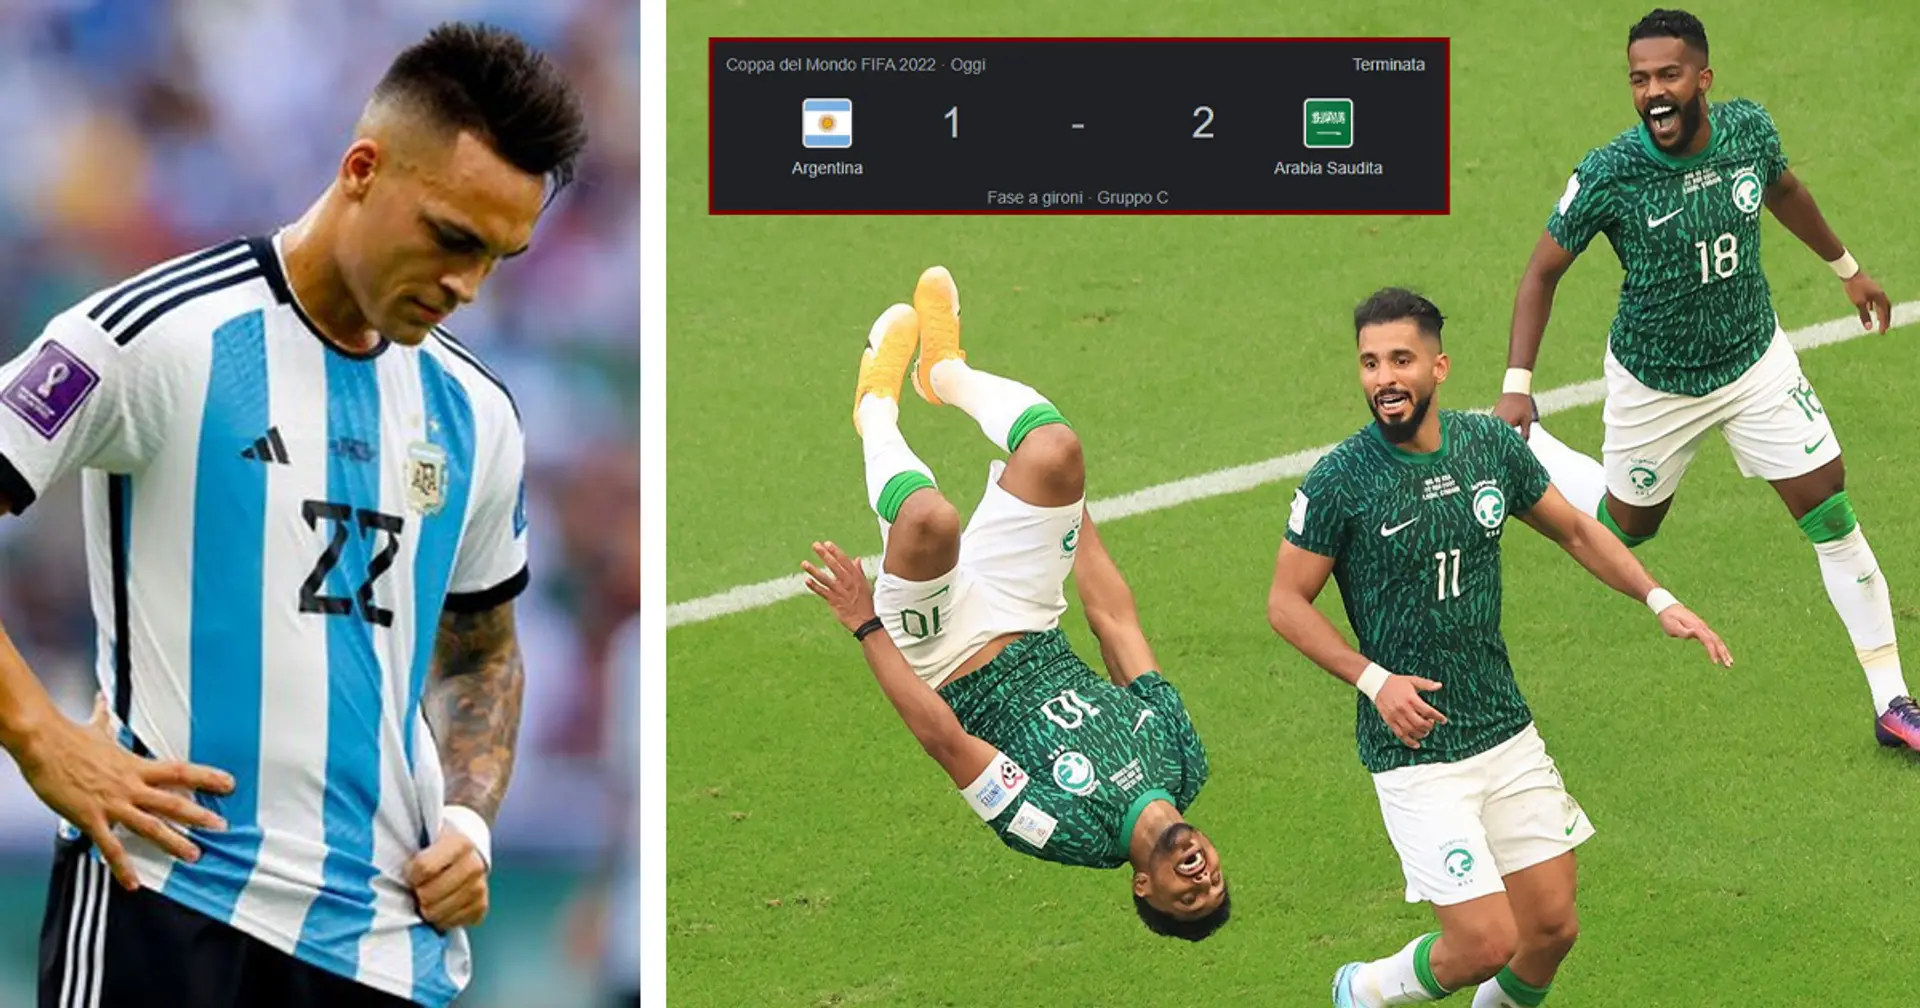 Sconfitta shock per l'Argentina in Coppa del Mondo contro l'Arabia Saudita: l'esordio per Lautaro Martinez è amaro